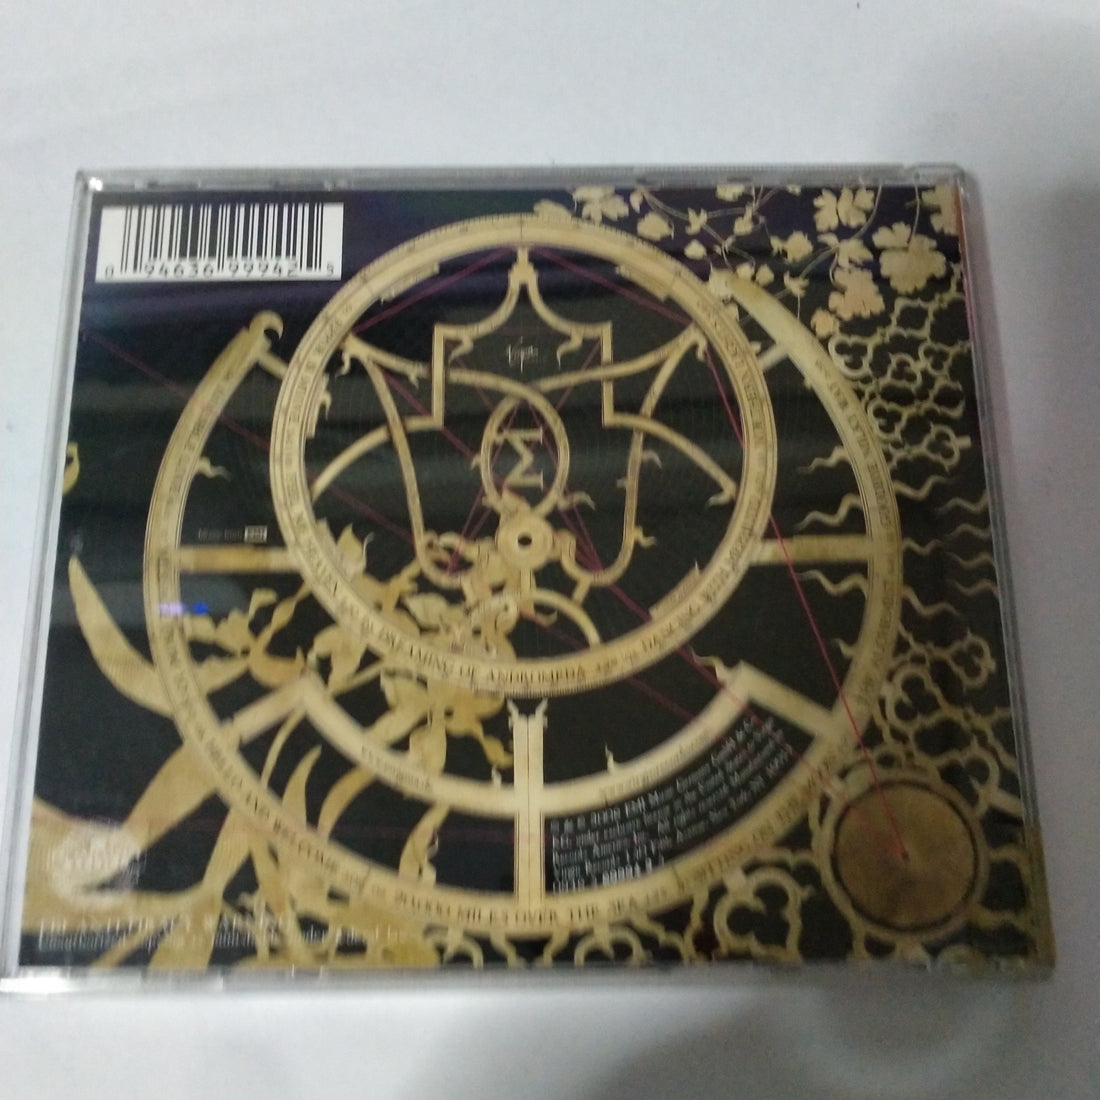 Enigma - A Posteriori (CD) (VG)